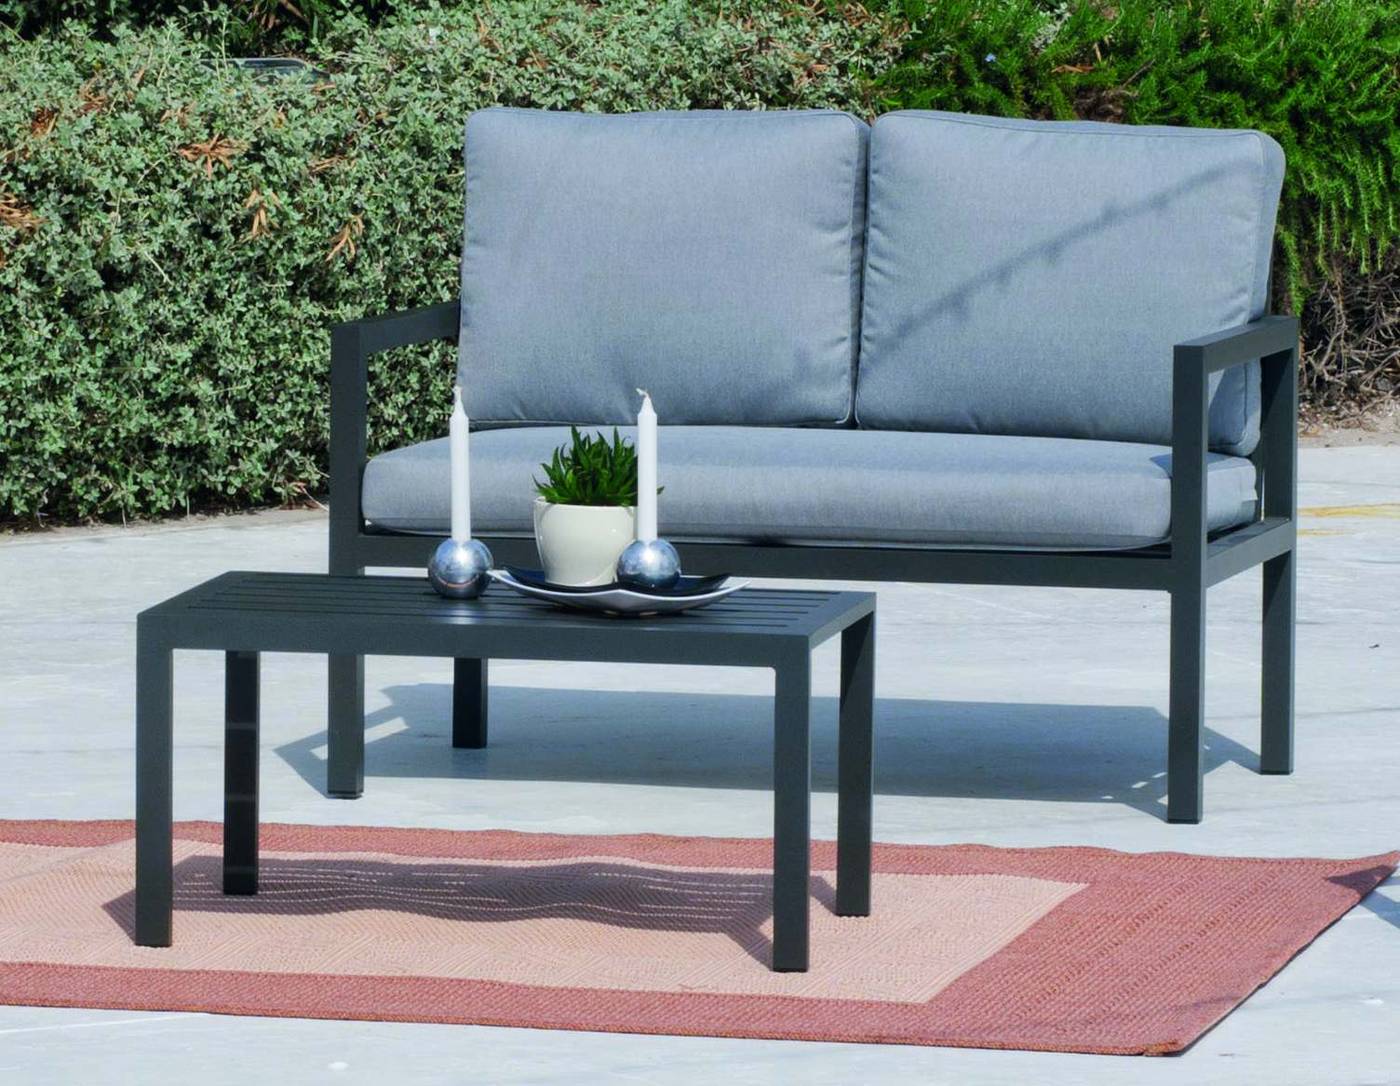 Set Aluminio Luxe Mandalay-7 - Conjunto aluminio: 1 sofá de 2 plazas + 2 sillones + 1 mesa de centro + cojines. Estructura aluminio de color blanco o antracita.